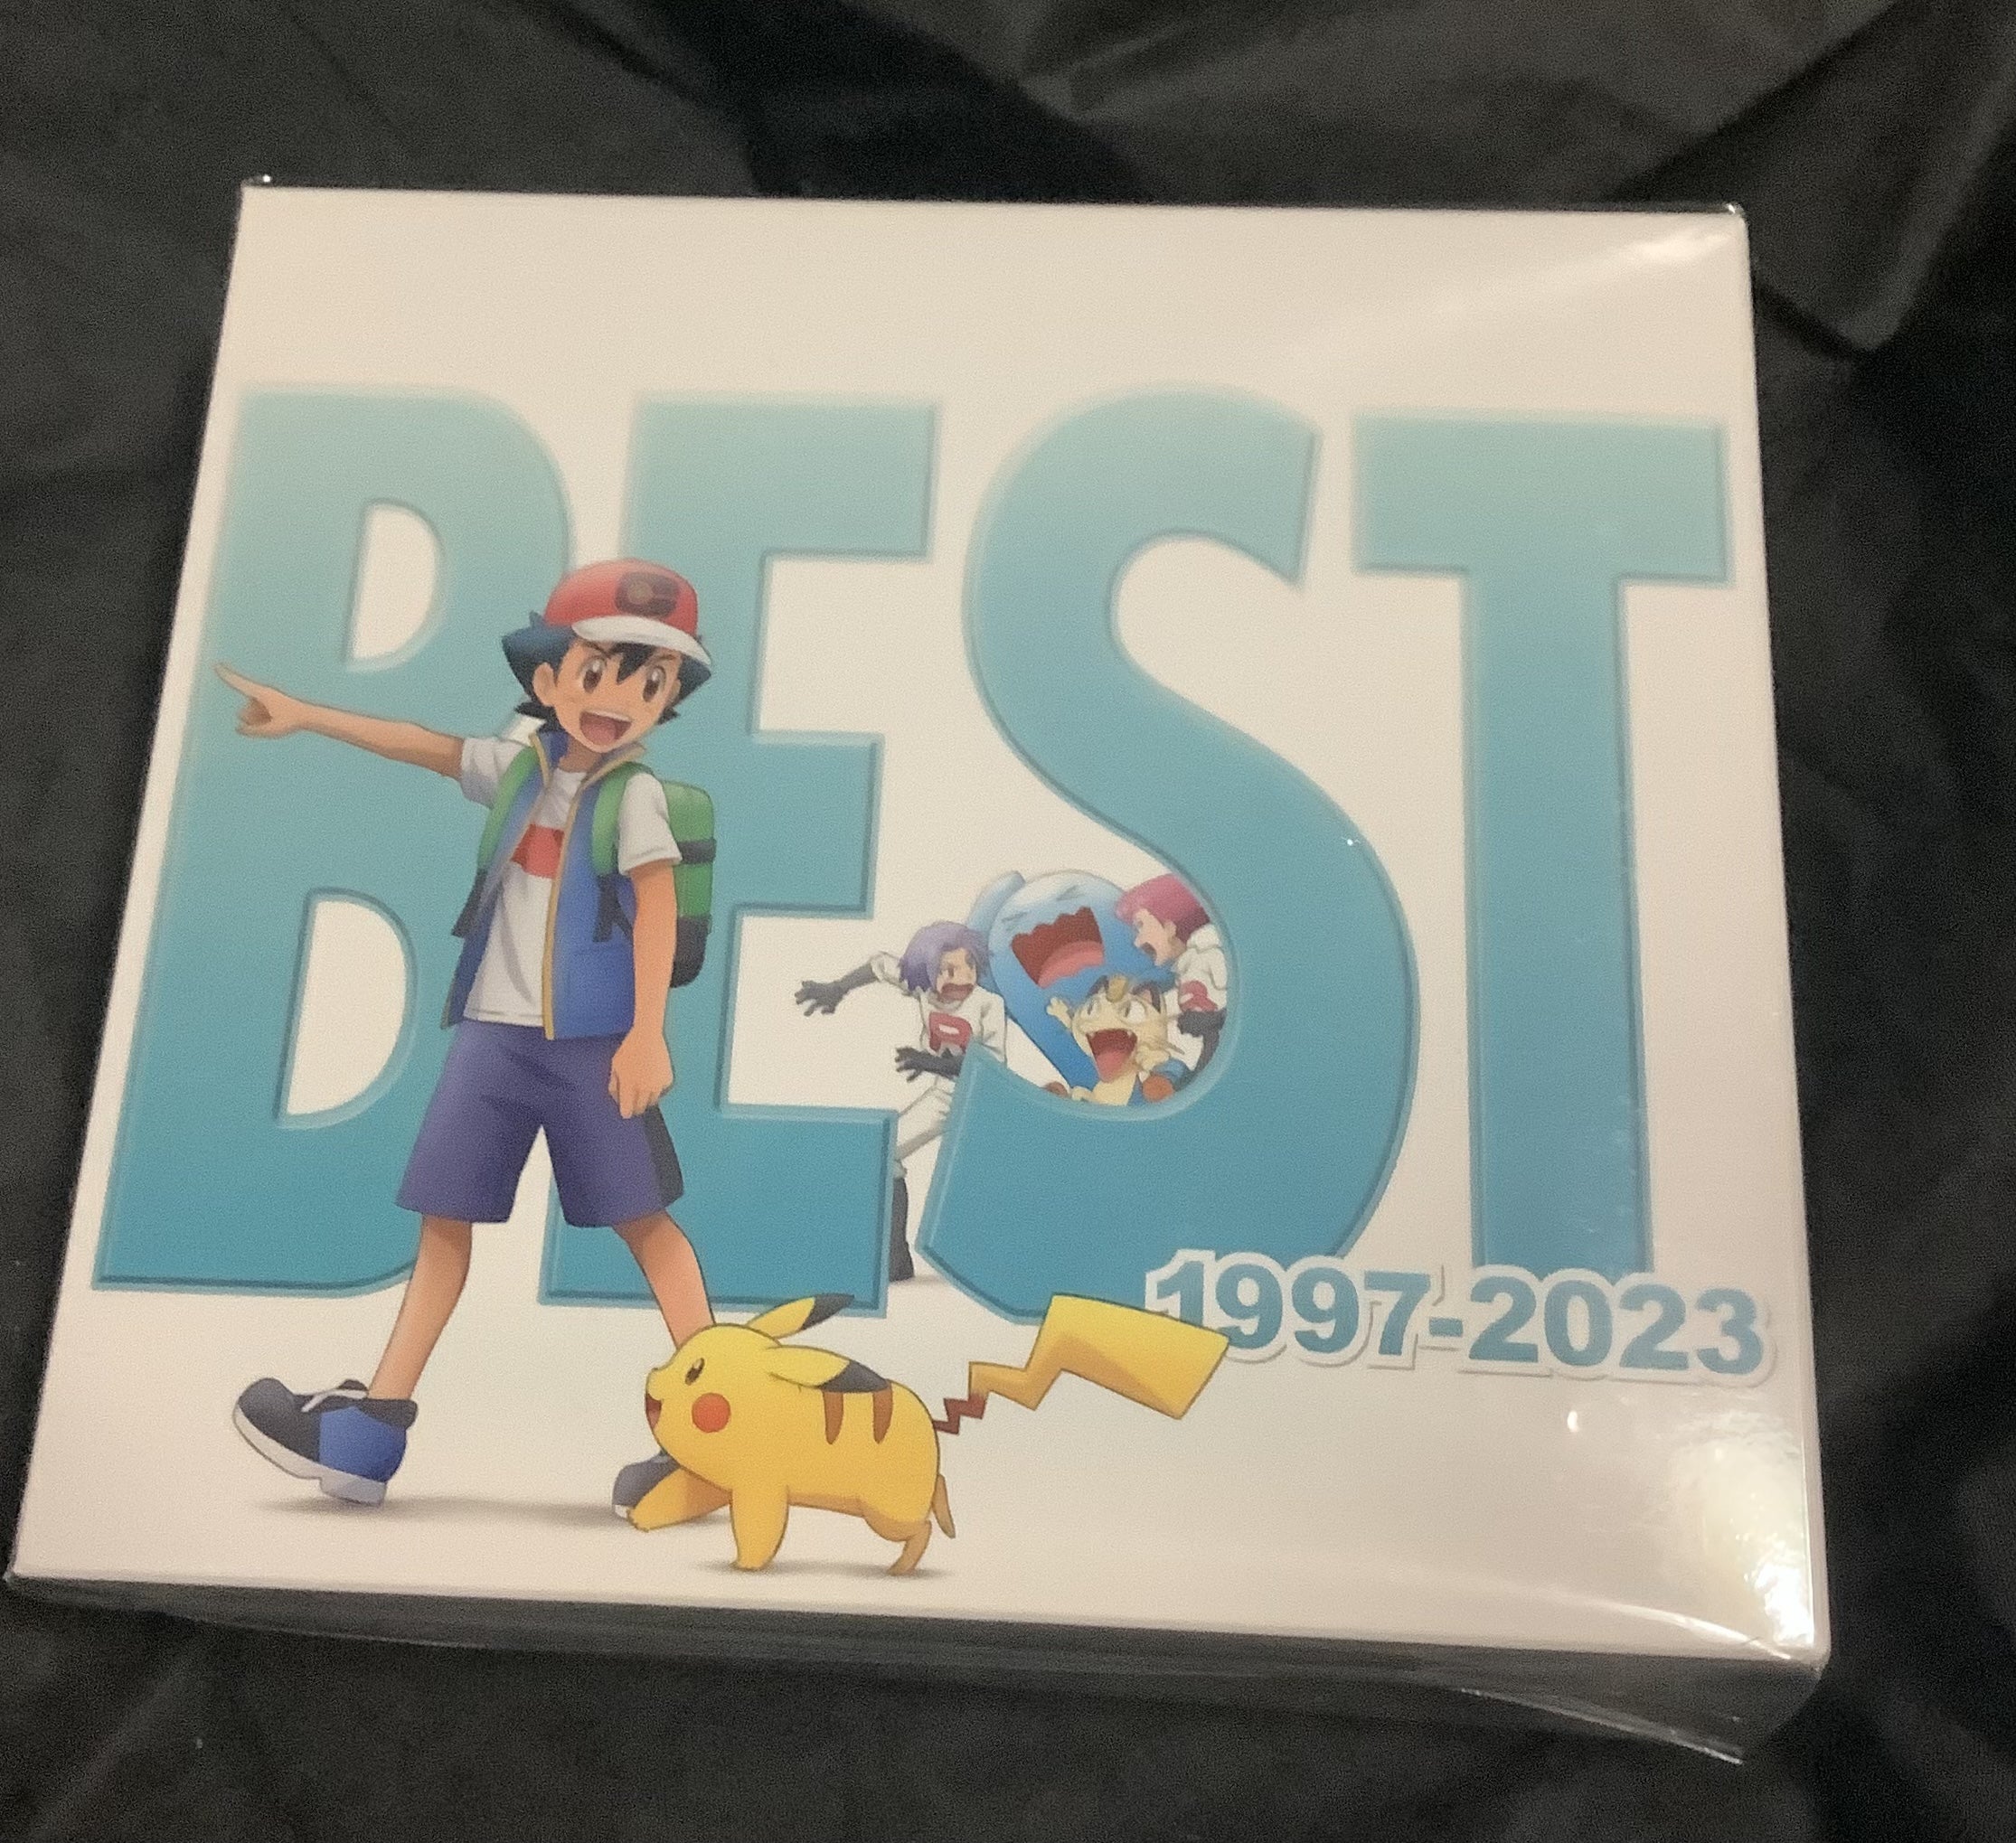 ポケモンTVアニメ主題歌 BEST OF BEST 1997-2023 - ミュージック